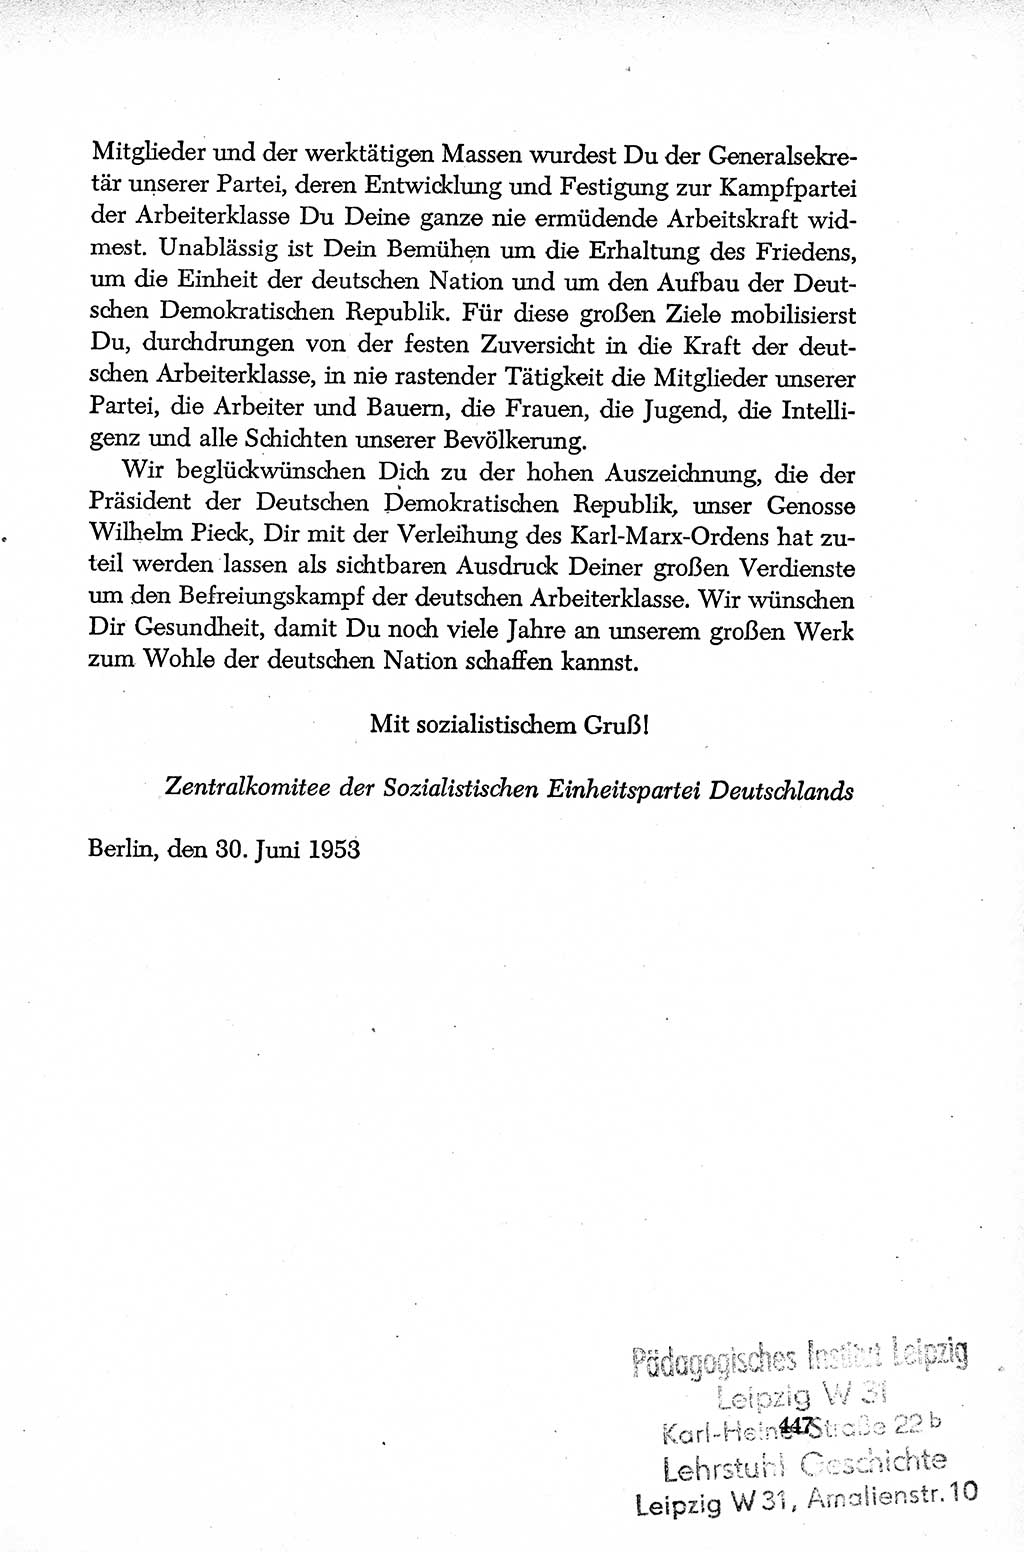 Dokumente der Sozialistischen Einheitspartei Deutschlands (SED) [Deutsche Demokratische Republik (DDR)] 1952-1953, Seite 447 (Dok. SED DDR 1952-1953, S. 447)